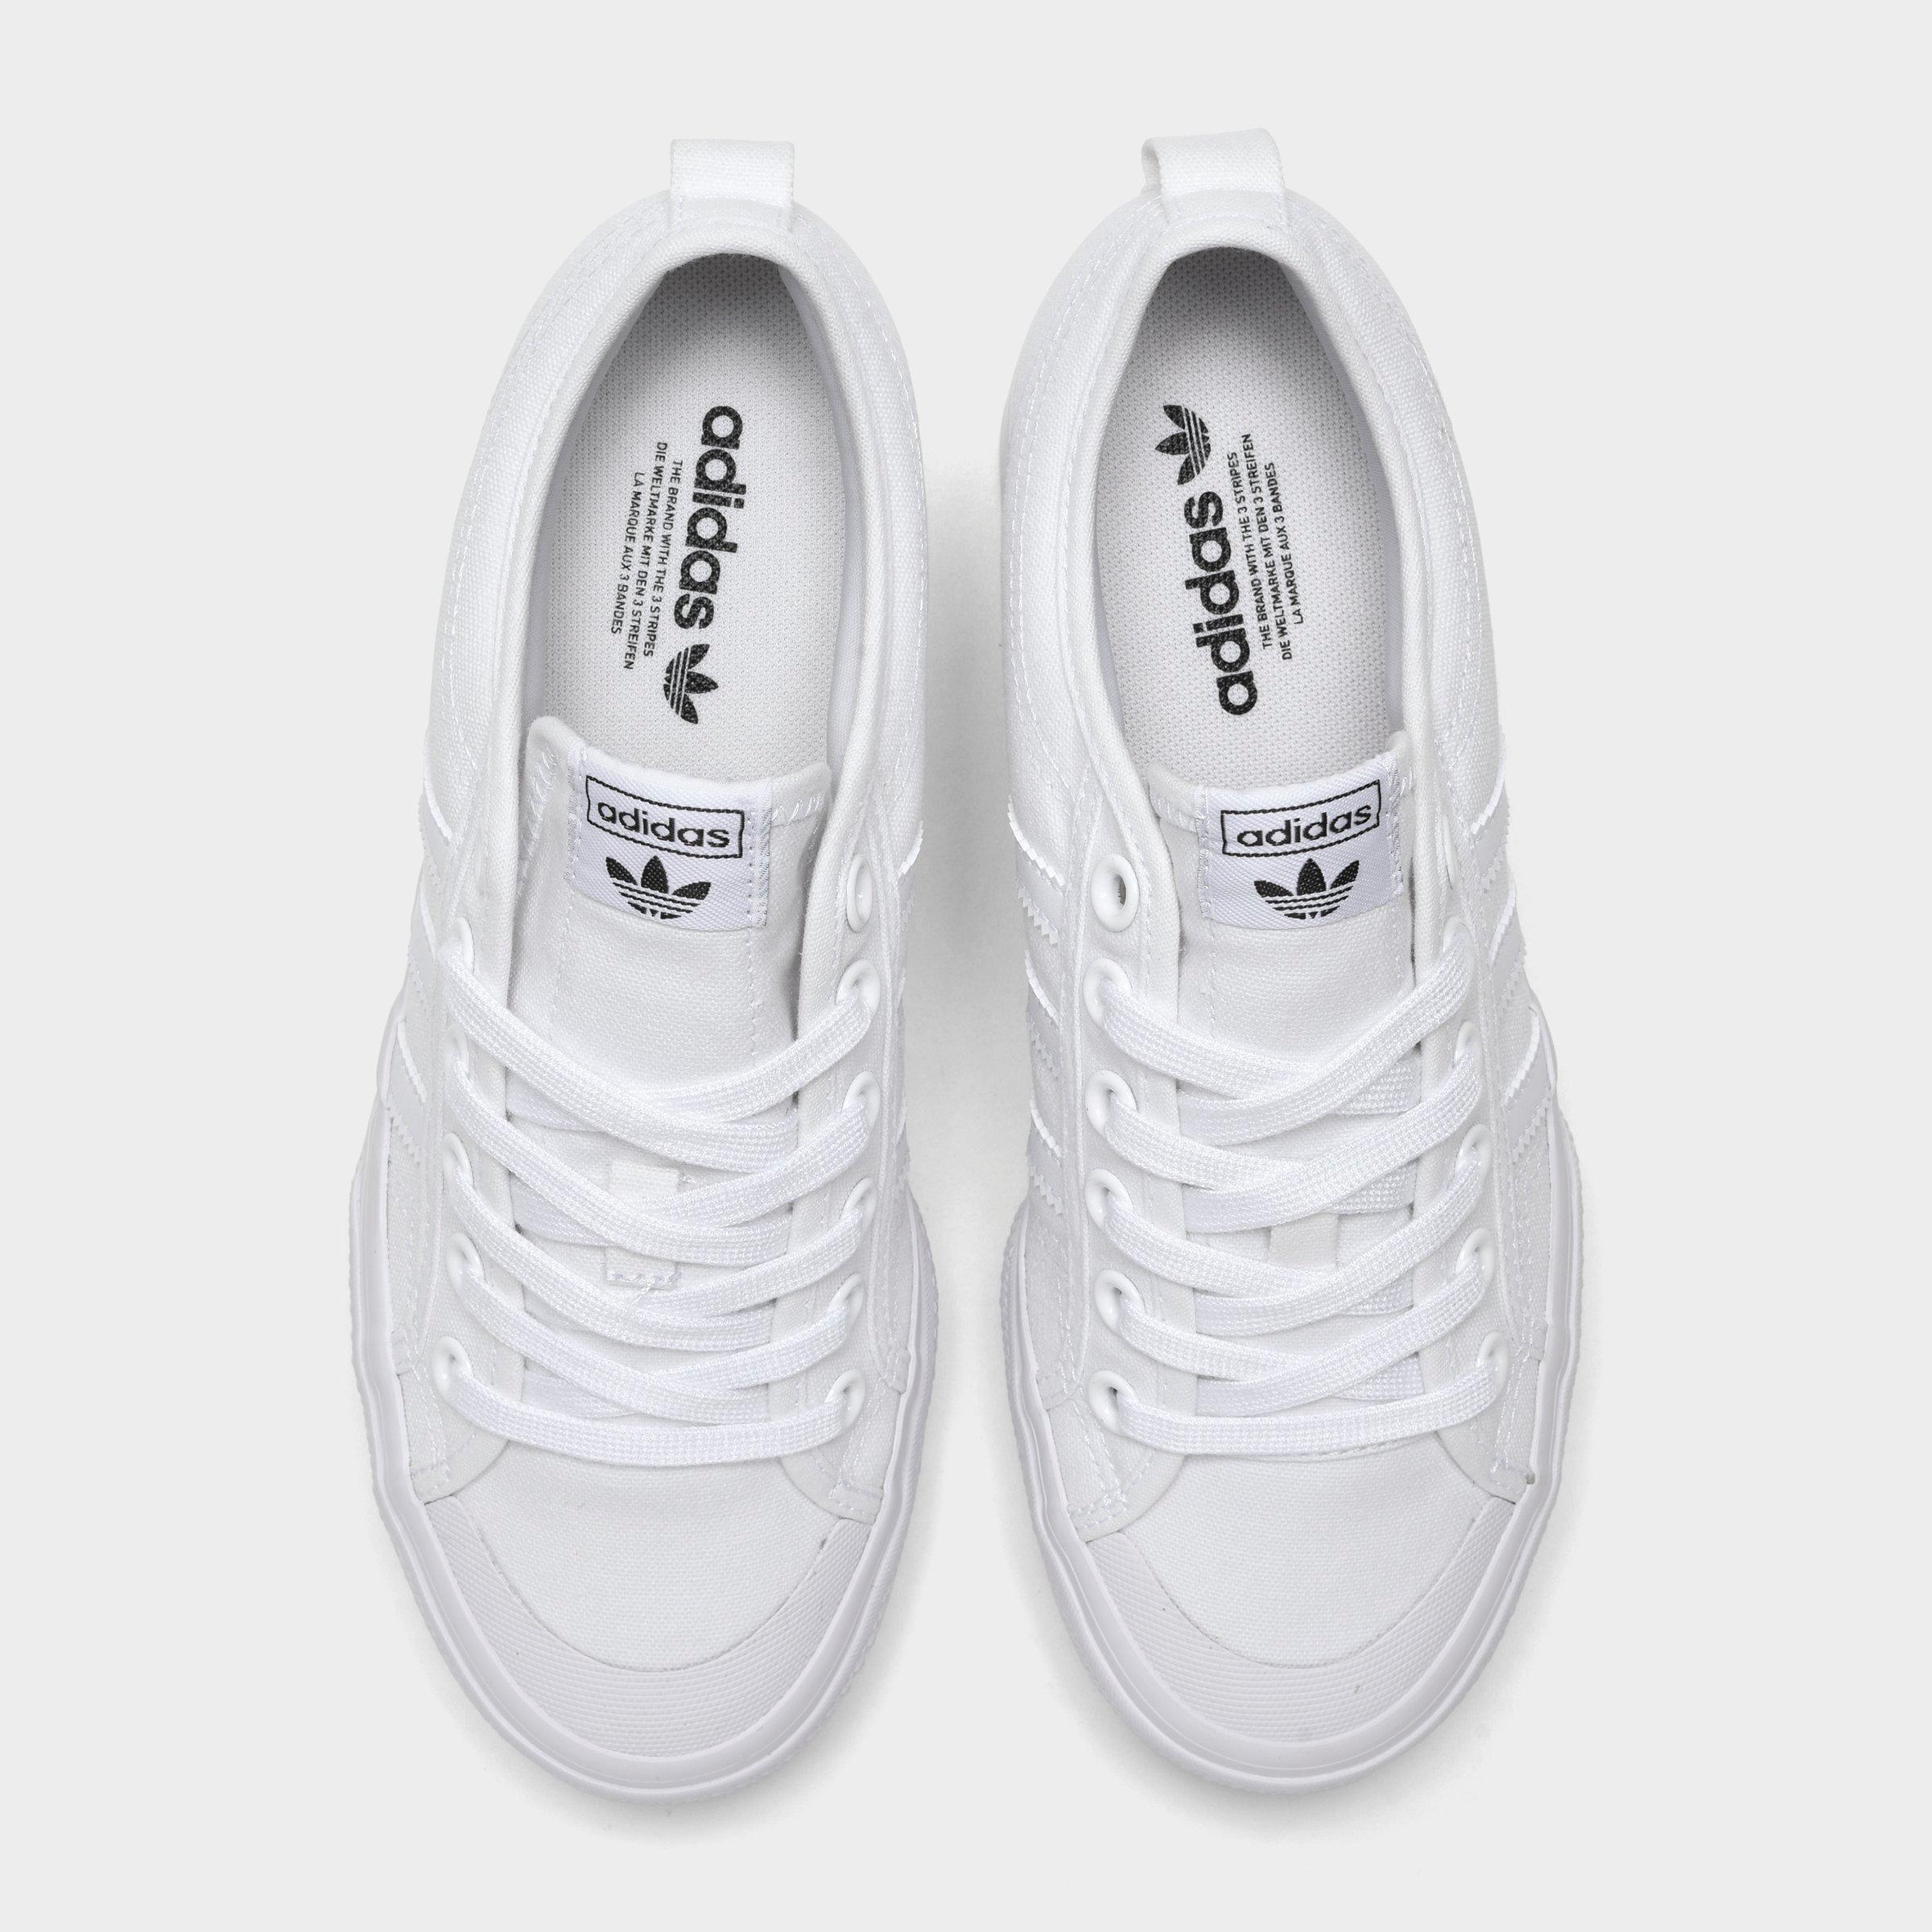 adidas nizza shoes white